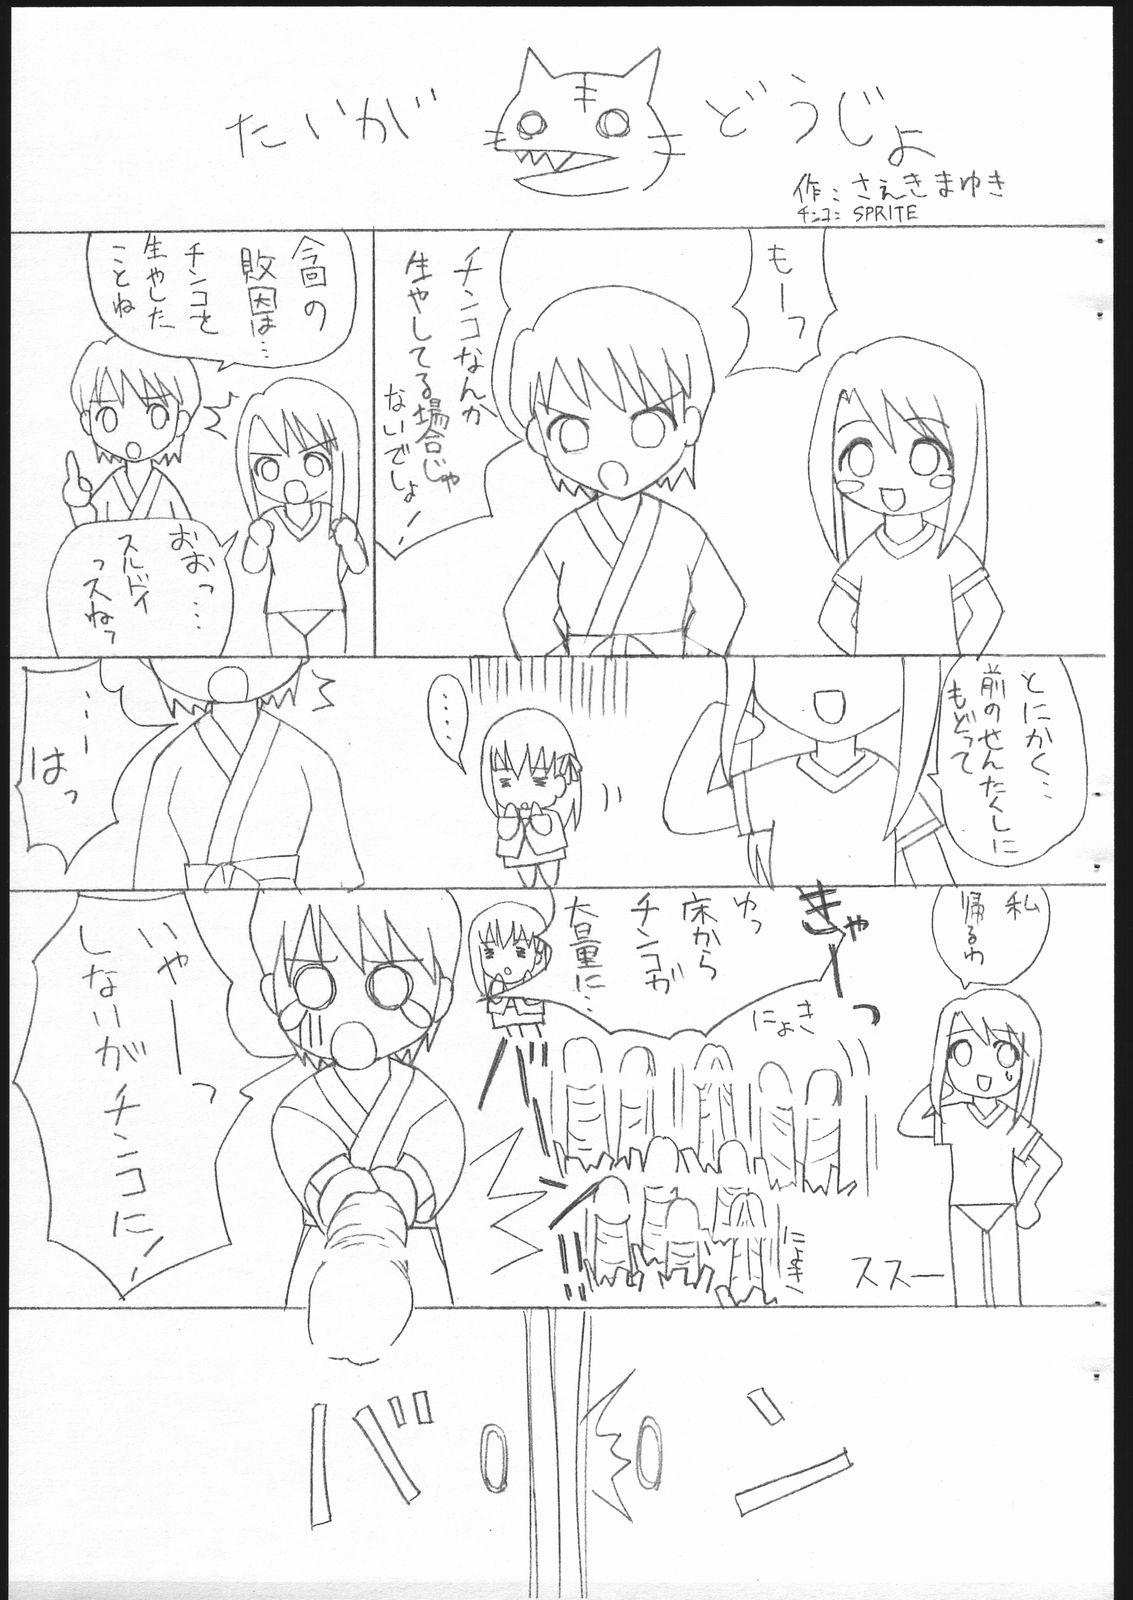 [Sprite] Fate/Sutei Inu Ai Do (Fate/Stay Night) page 23 full